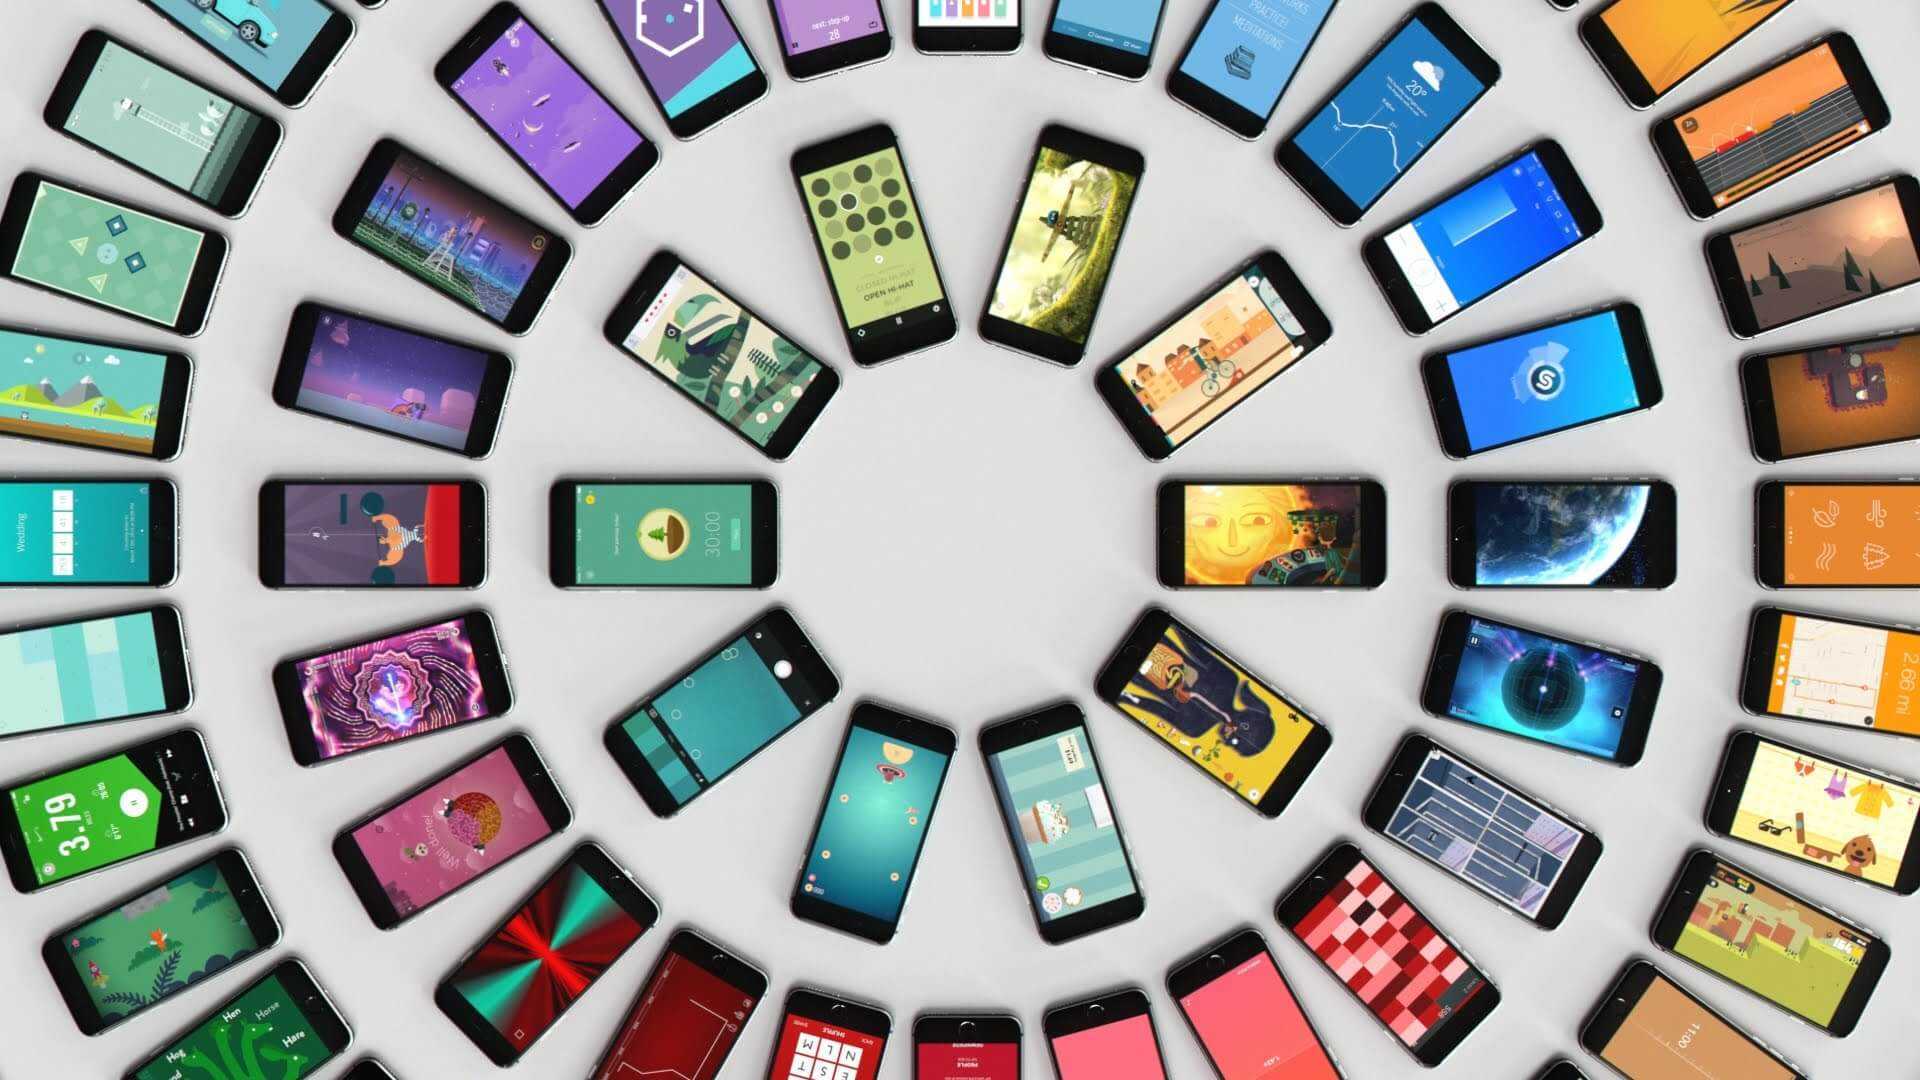 Iphone для богатых, android для бедных? павел дуров и билл гейтс считают иначе | appleinsider.ru